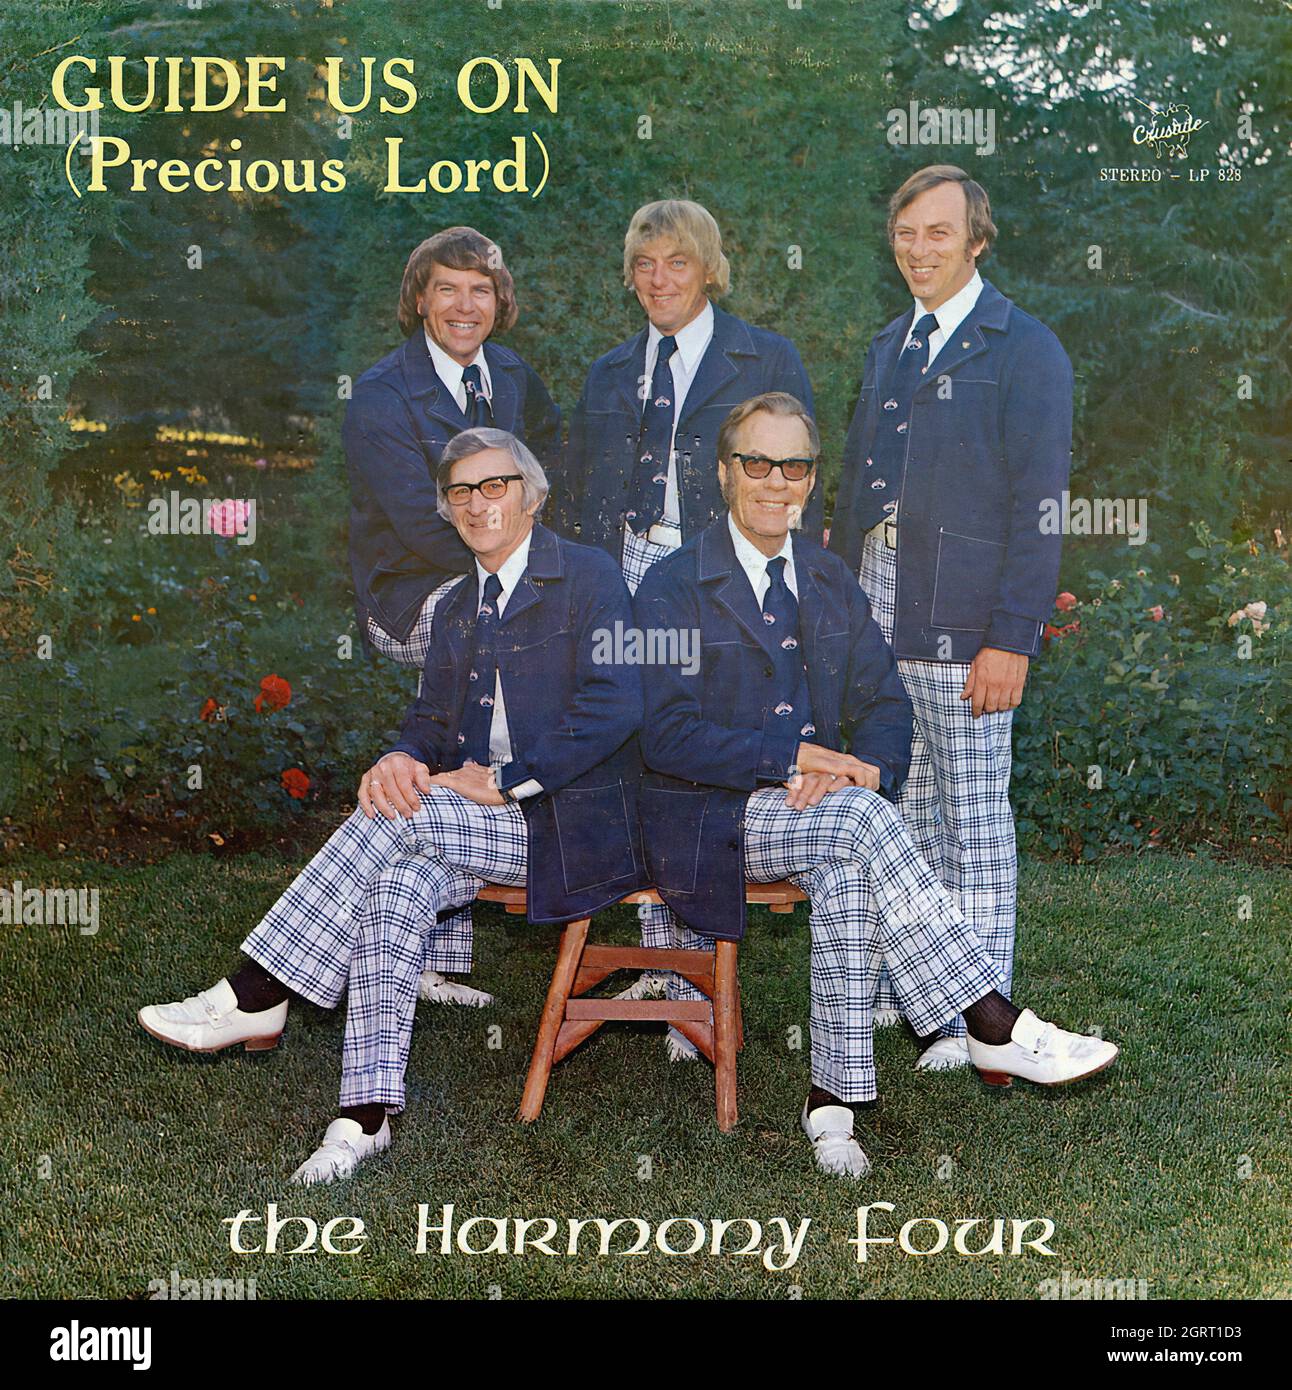 Guide nous sur (Seigneur précieux) - Vintage American Christian Vinyl Album Banque D'Images